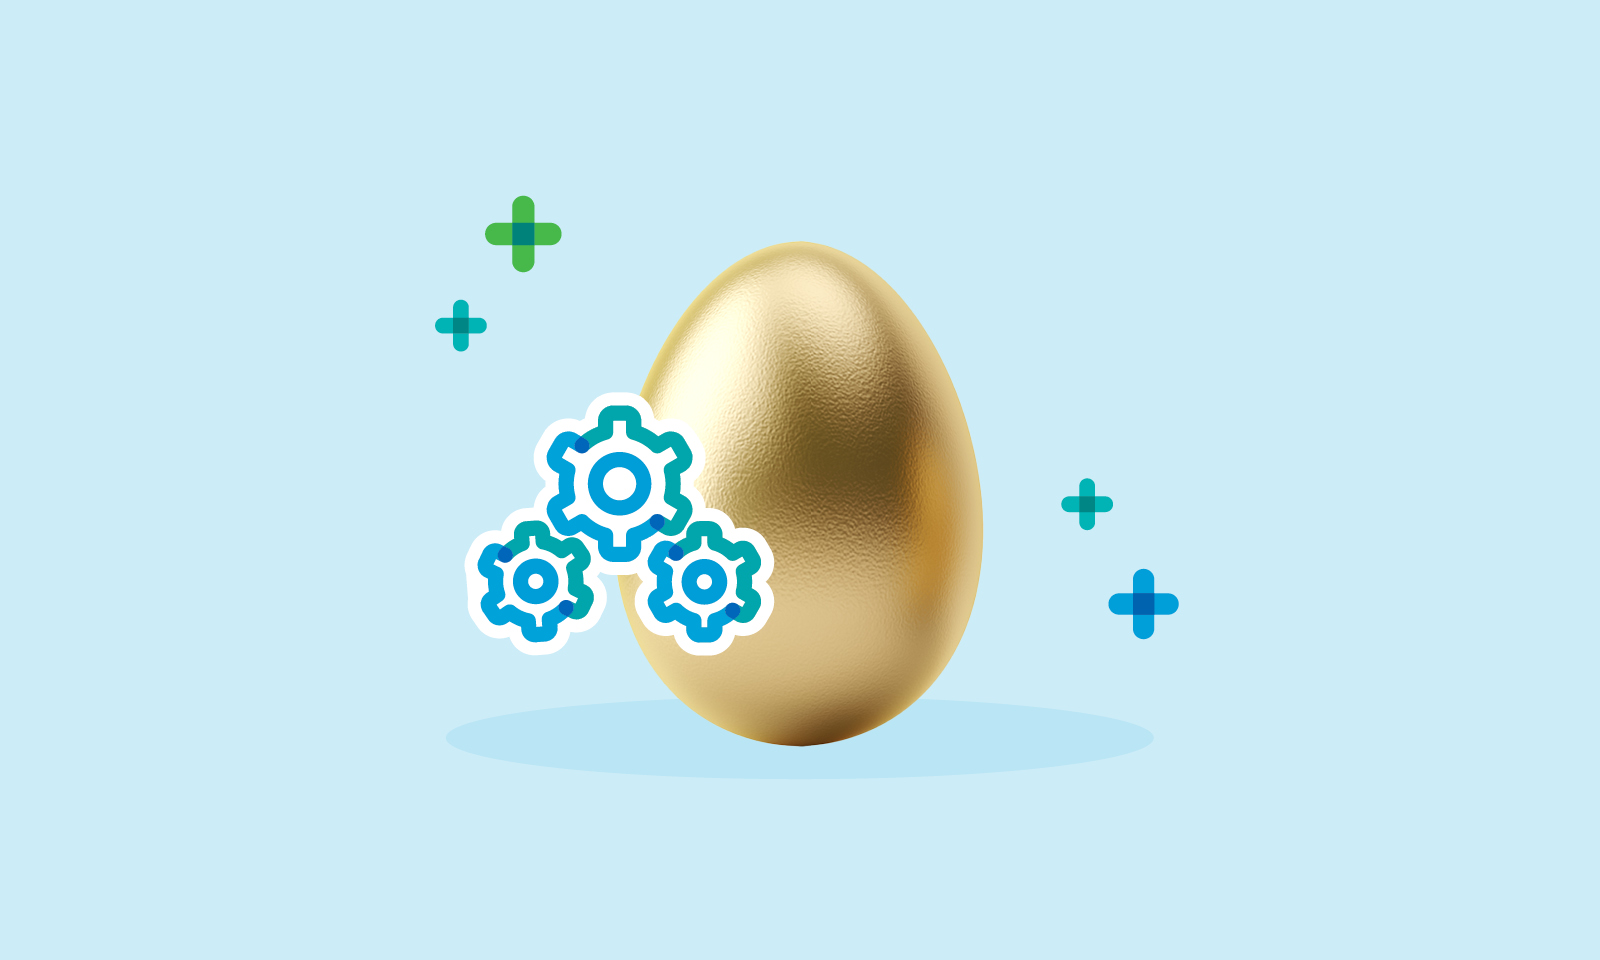 A golden egg and cogwheels